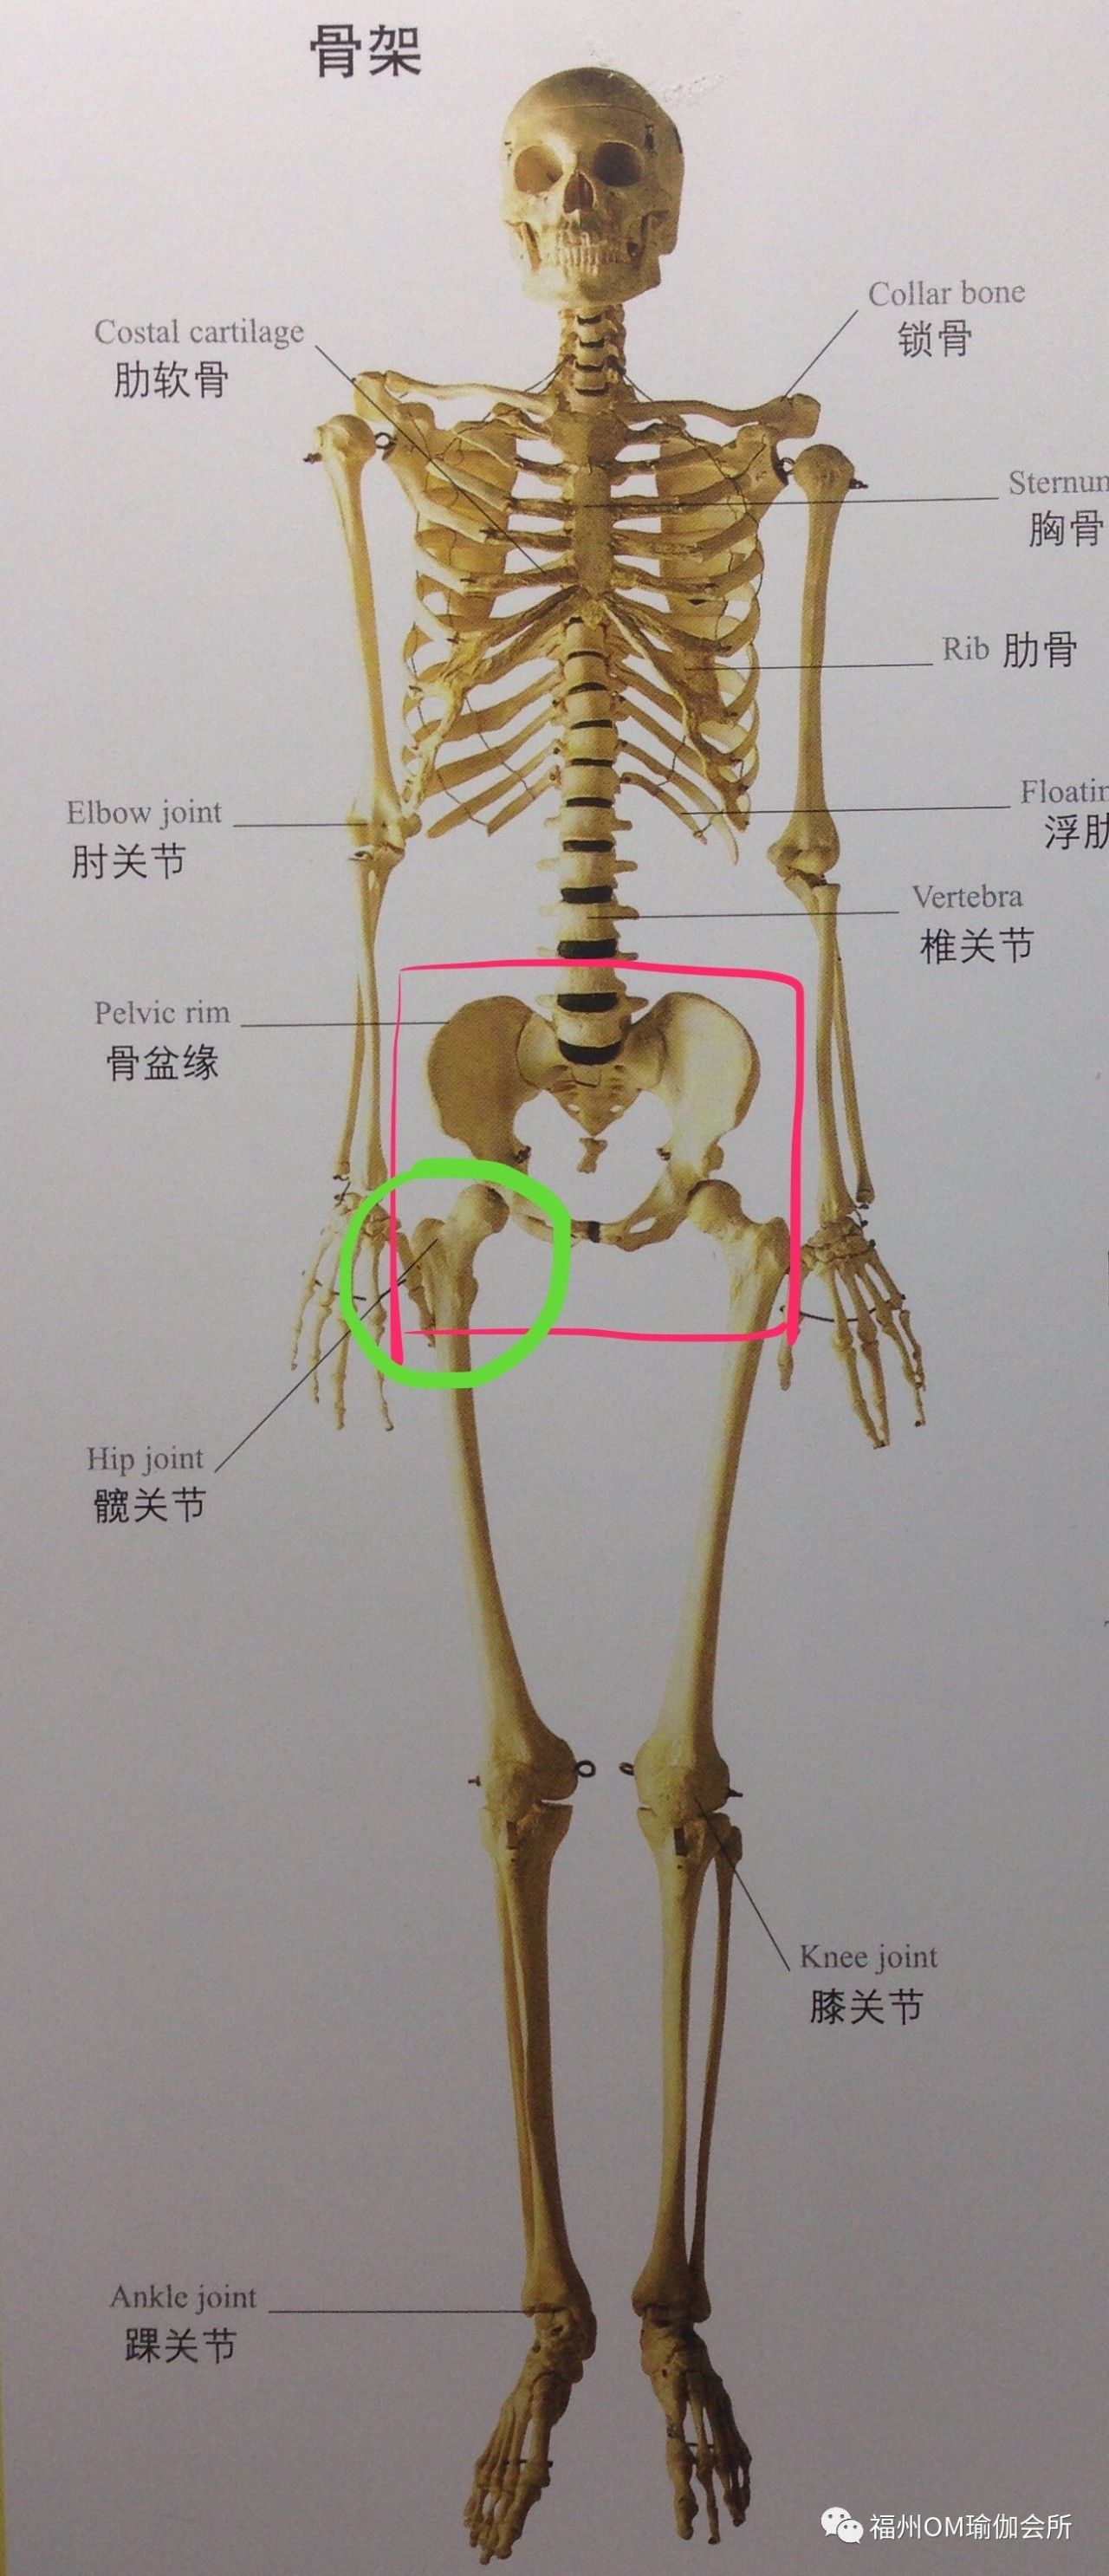 骨盆由髋,骶骨和尾骨构成,髋由髂骨,坐骨和耻骨构成,来~三句话 一张图